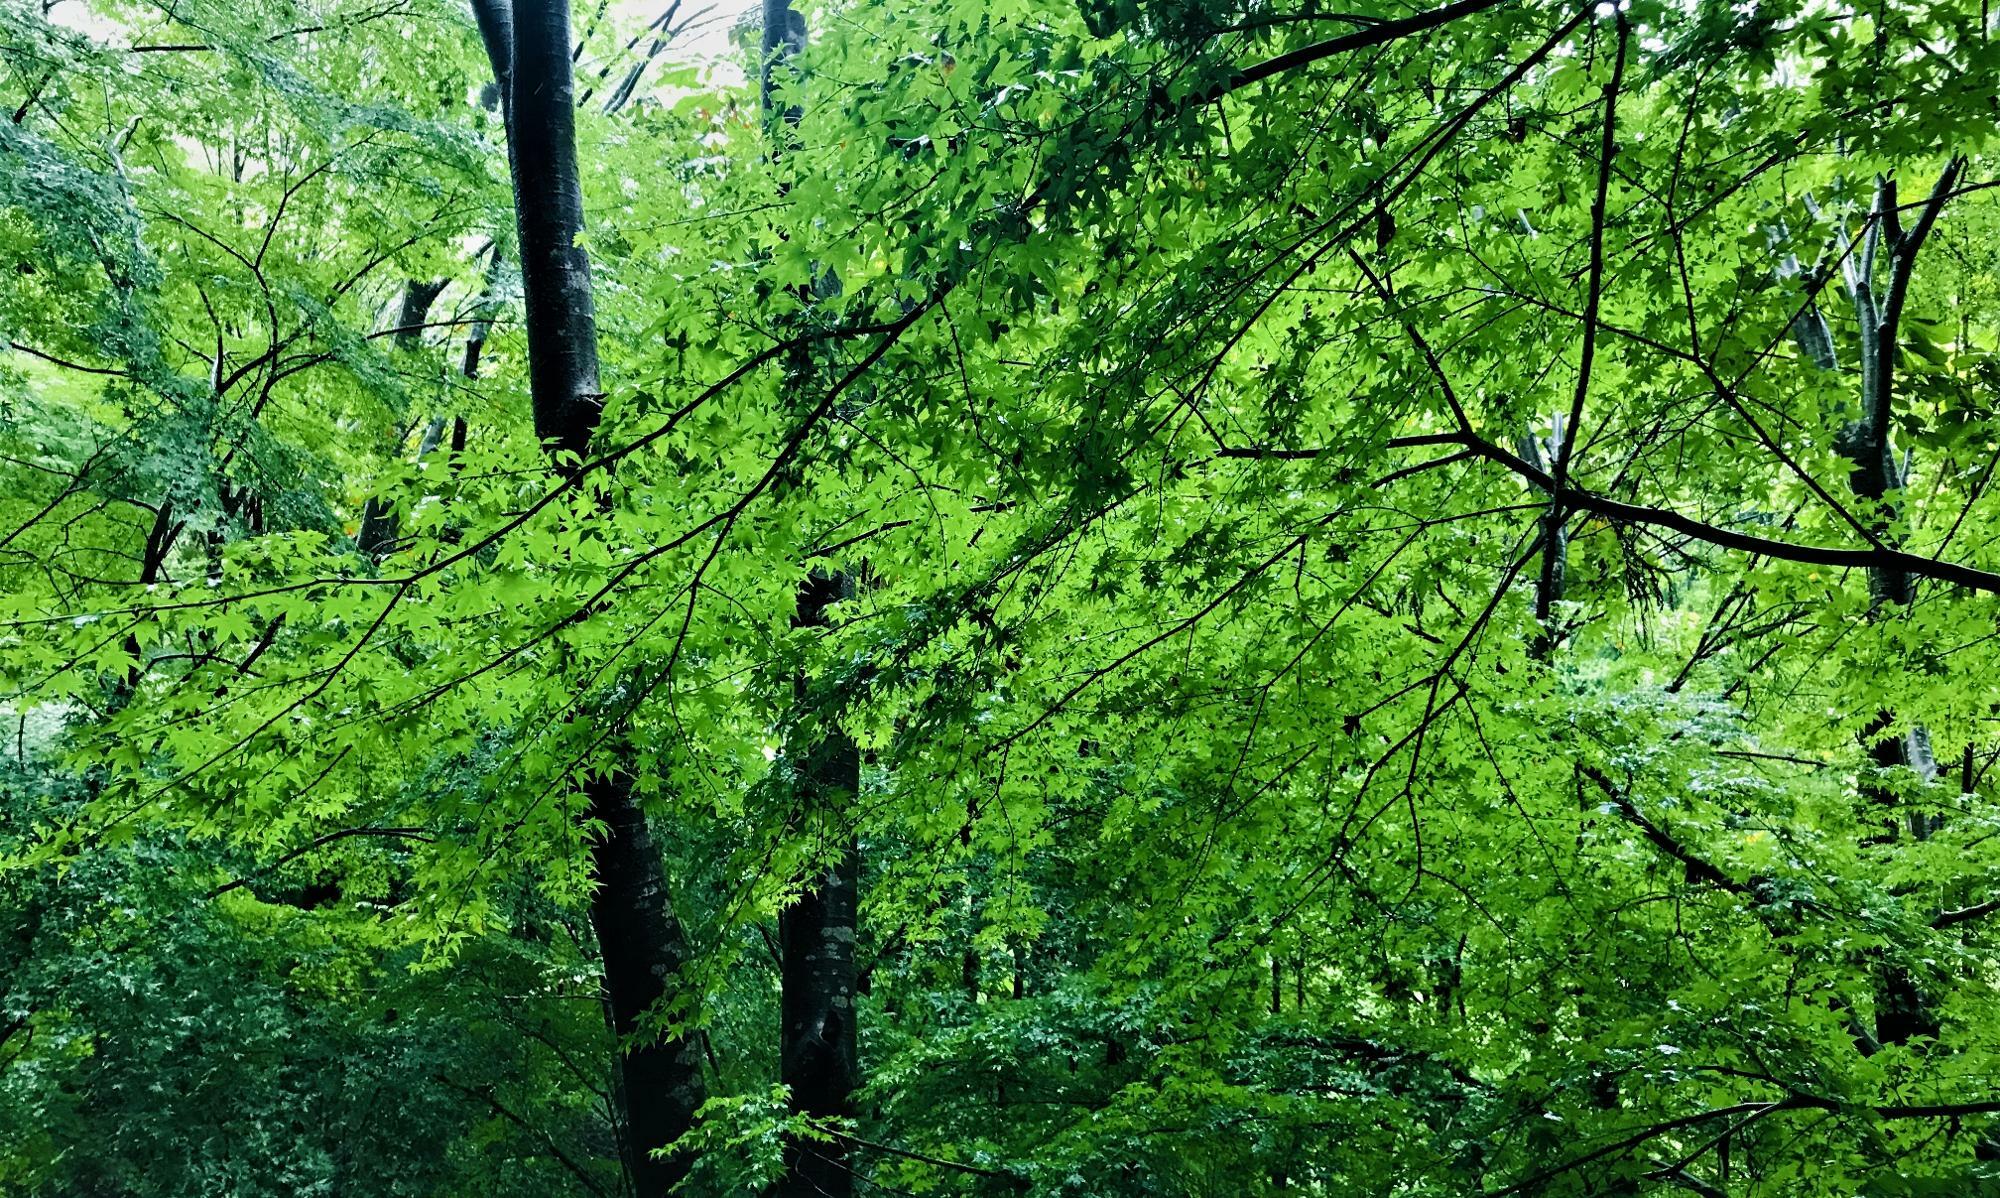 雨の日の緑は一段ときれいです。雨で揺れる木の葉も楽しみましょう。